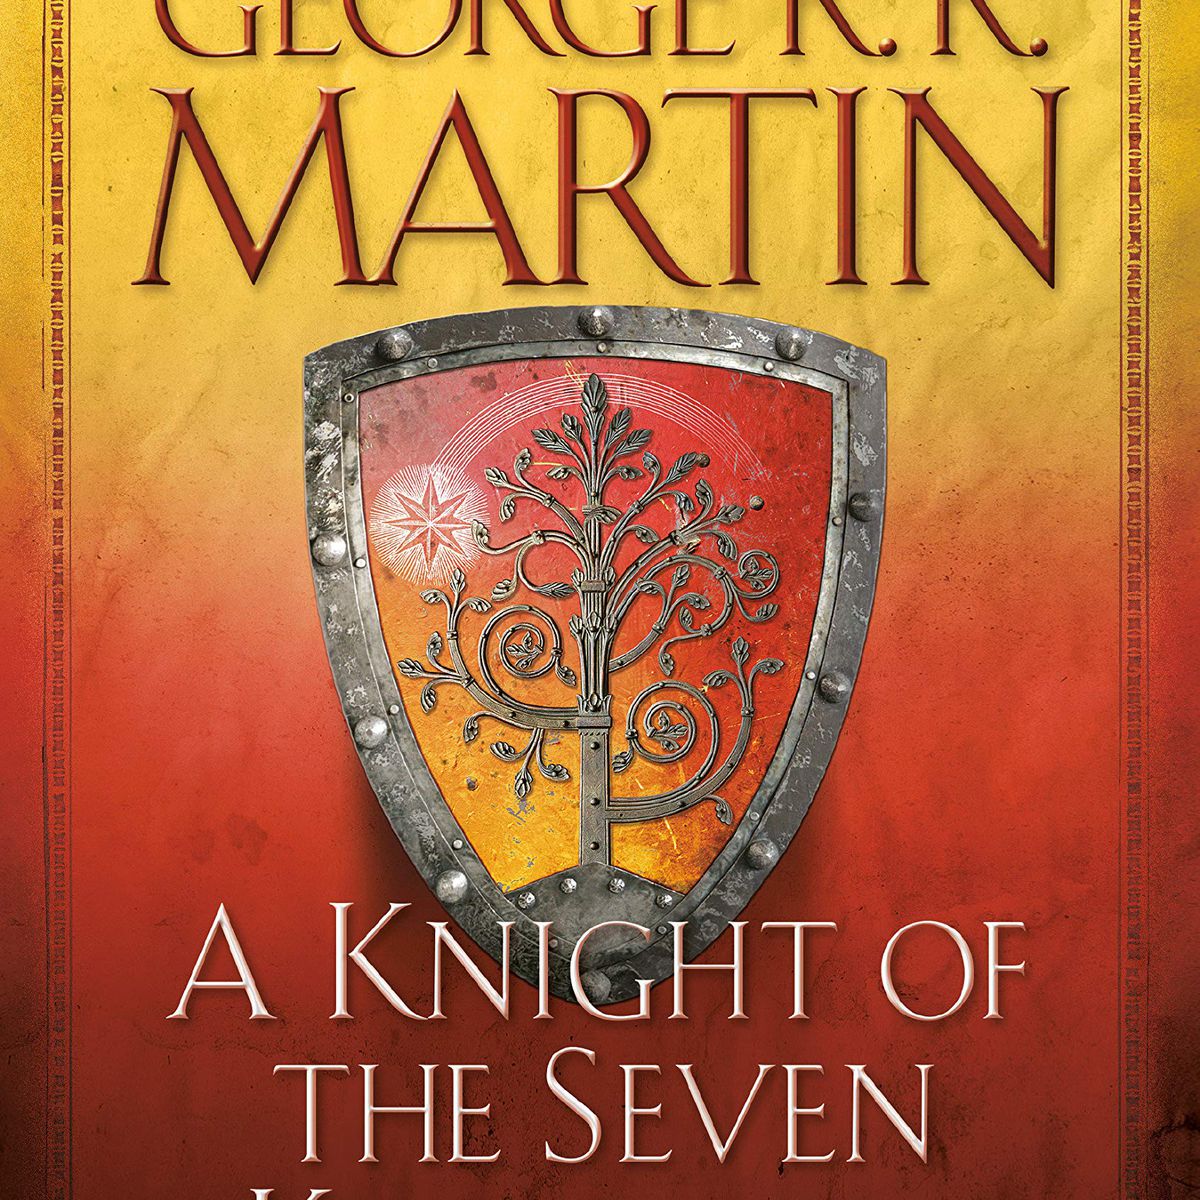 En sköld med ett träd på omslaget till George RR Martins A Knight of Seven Kingdoms